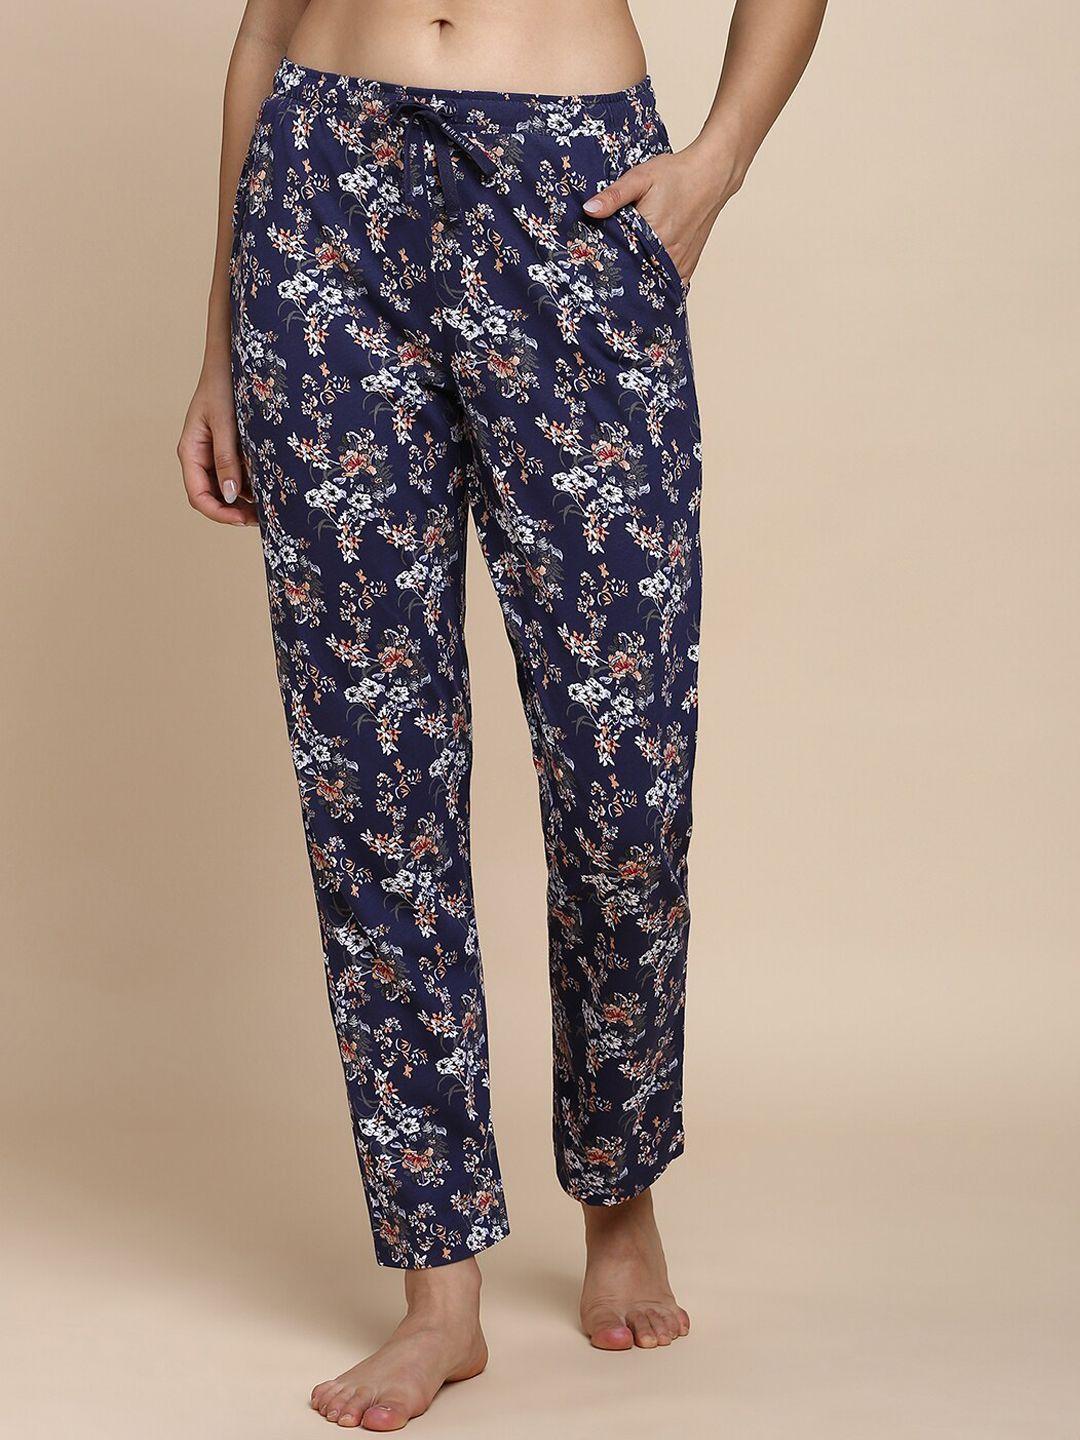 van-heusen-floral-printed-modal-lounge-pants